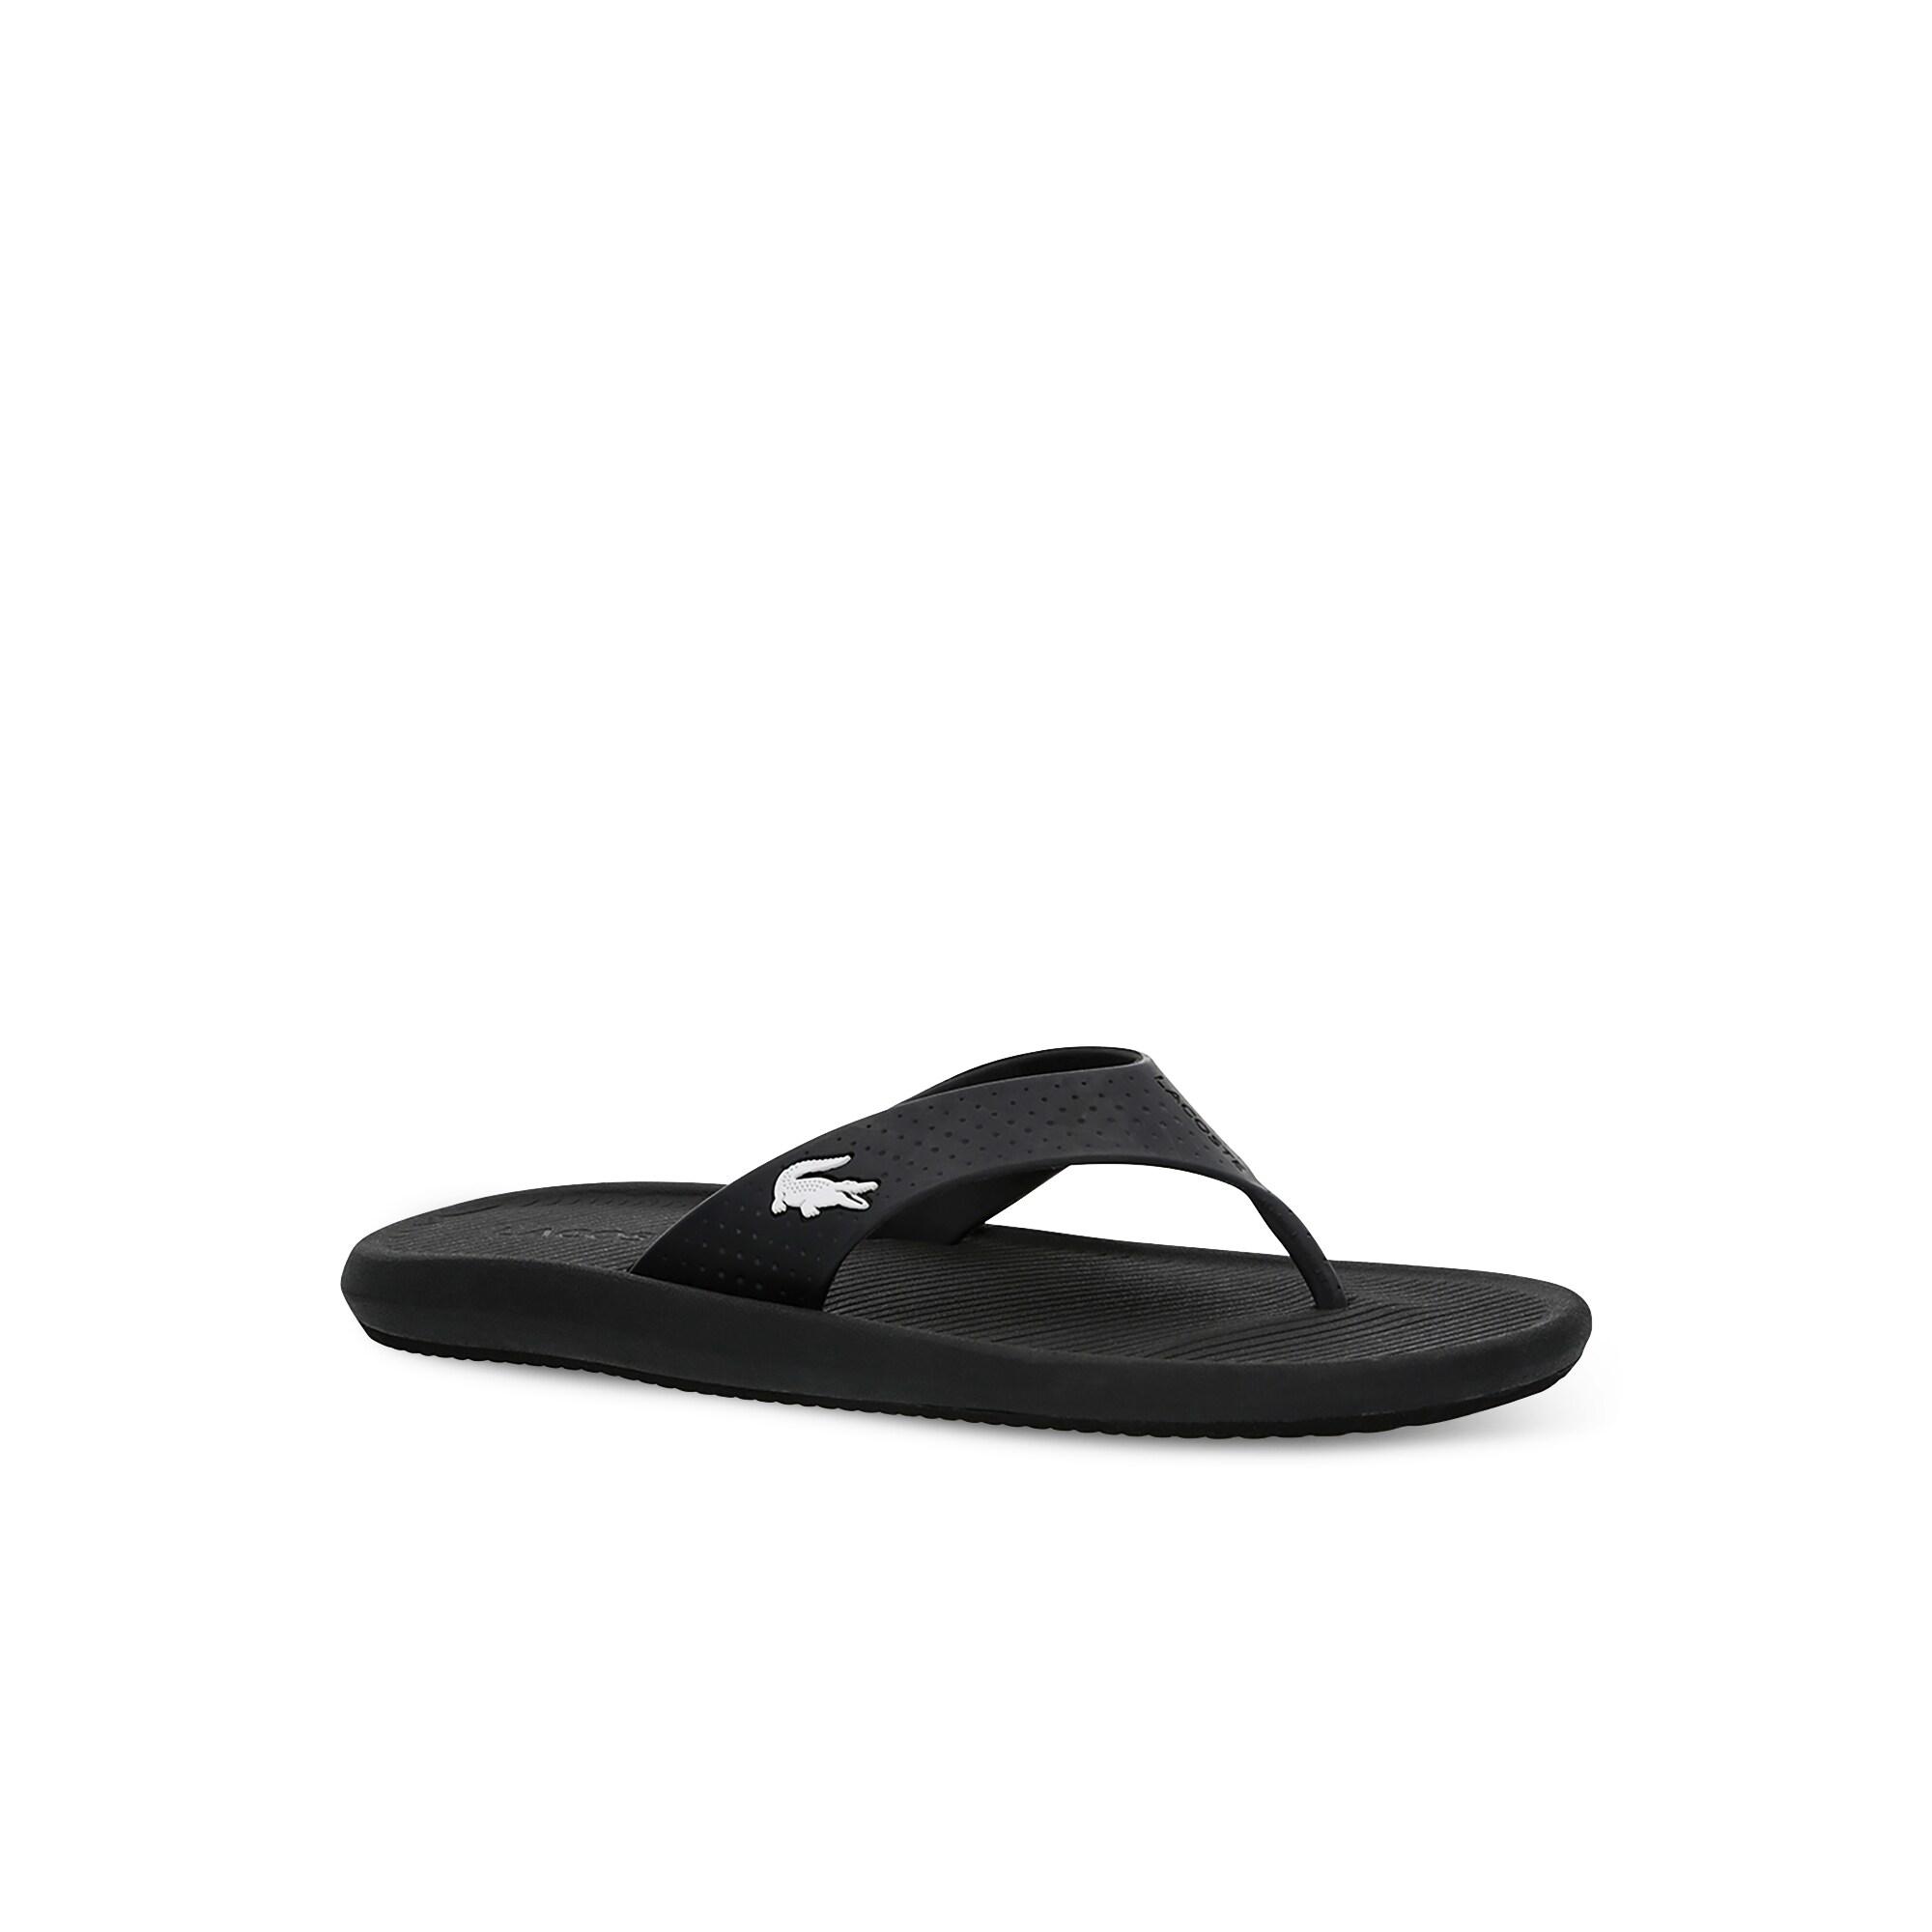 Lacoste Croco Sandal 219 1 Cma Erkek Siyah - Beyaz Terlik. 2